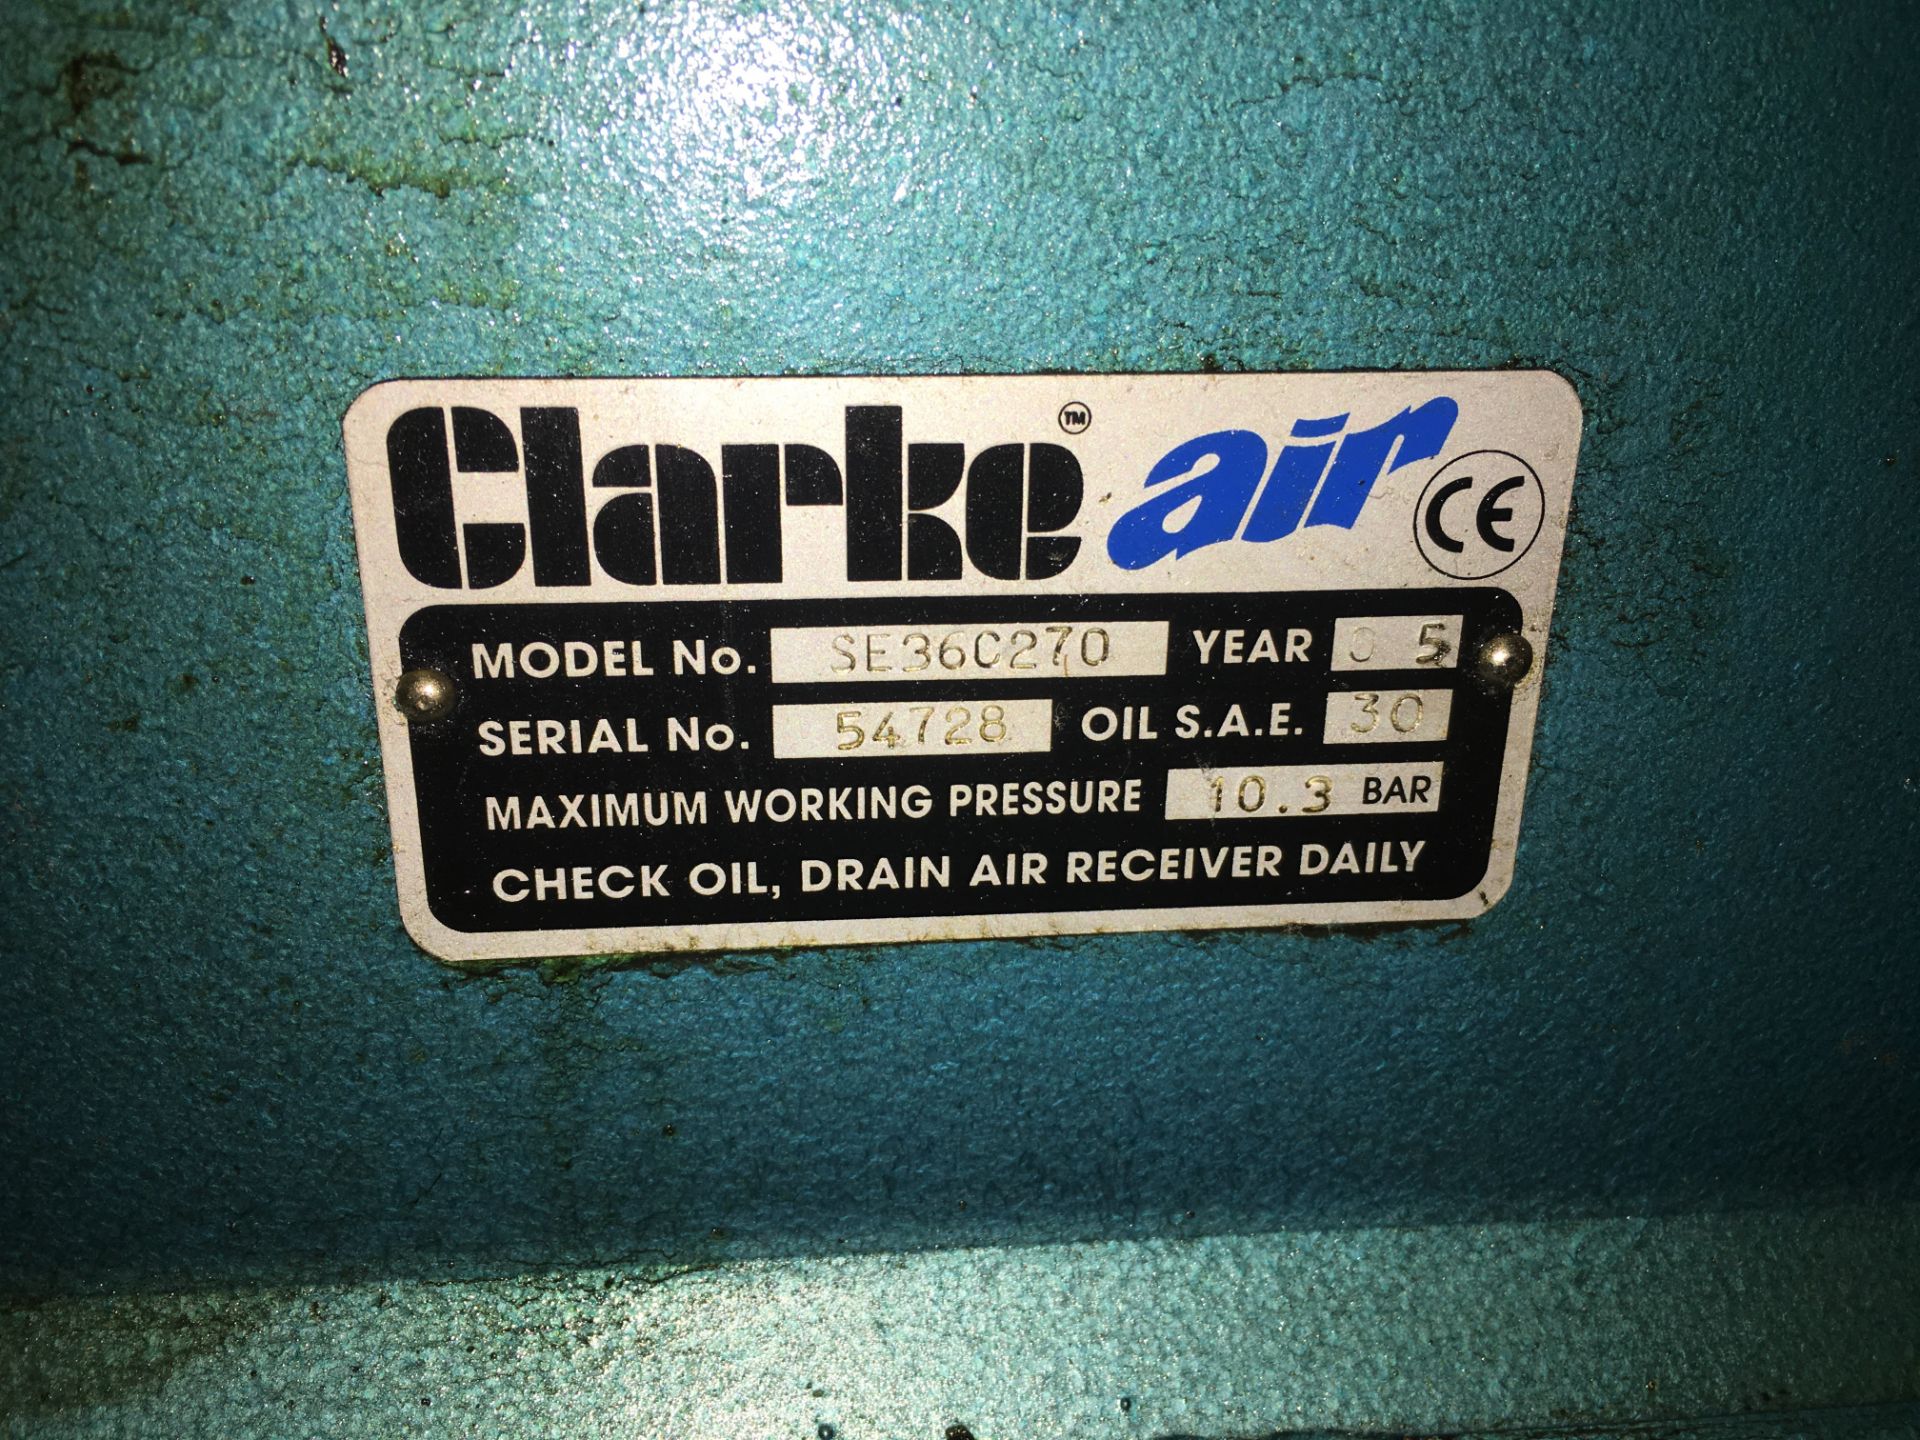 ClarkeAir Industrial Air Compressor - Bild 4 aus 7